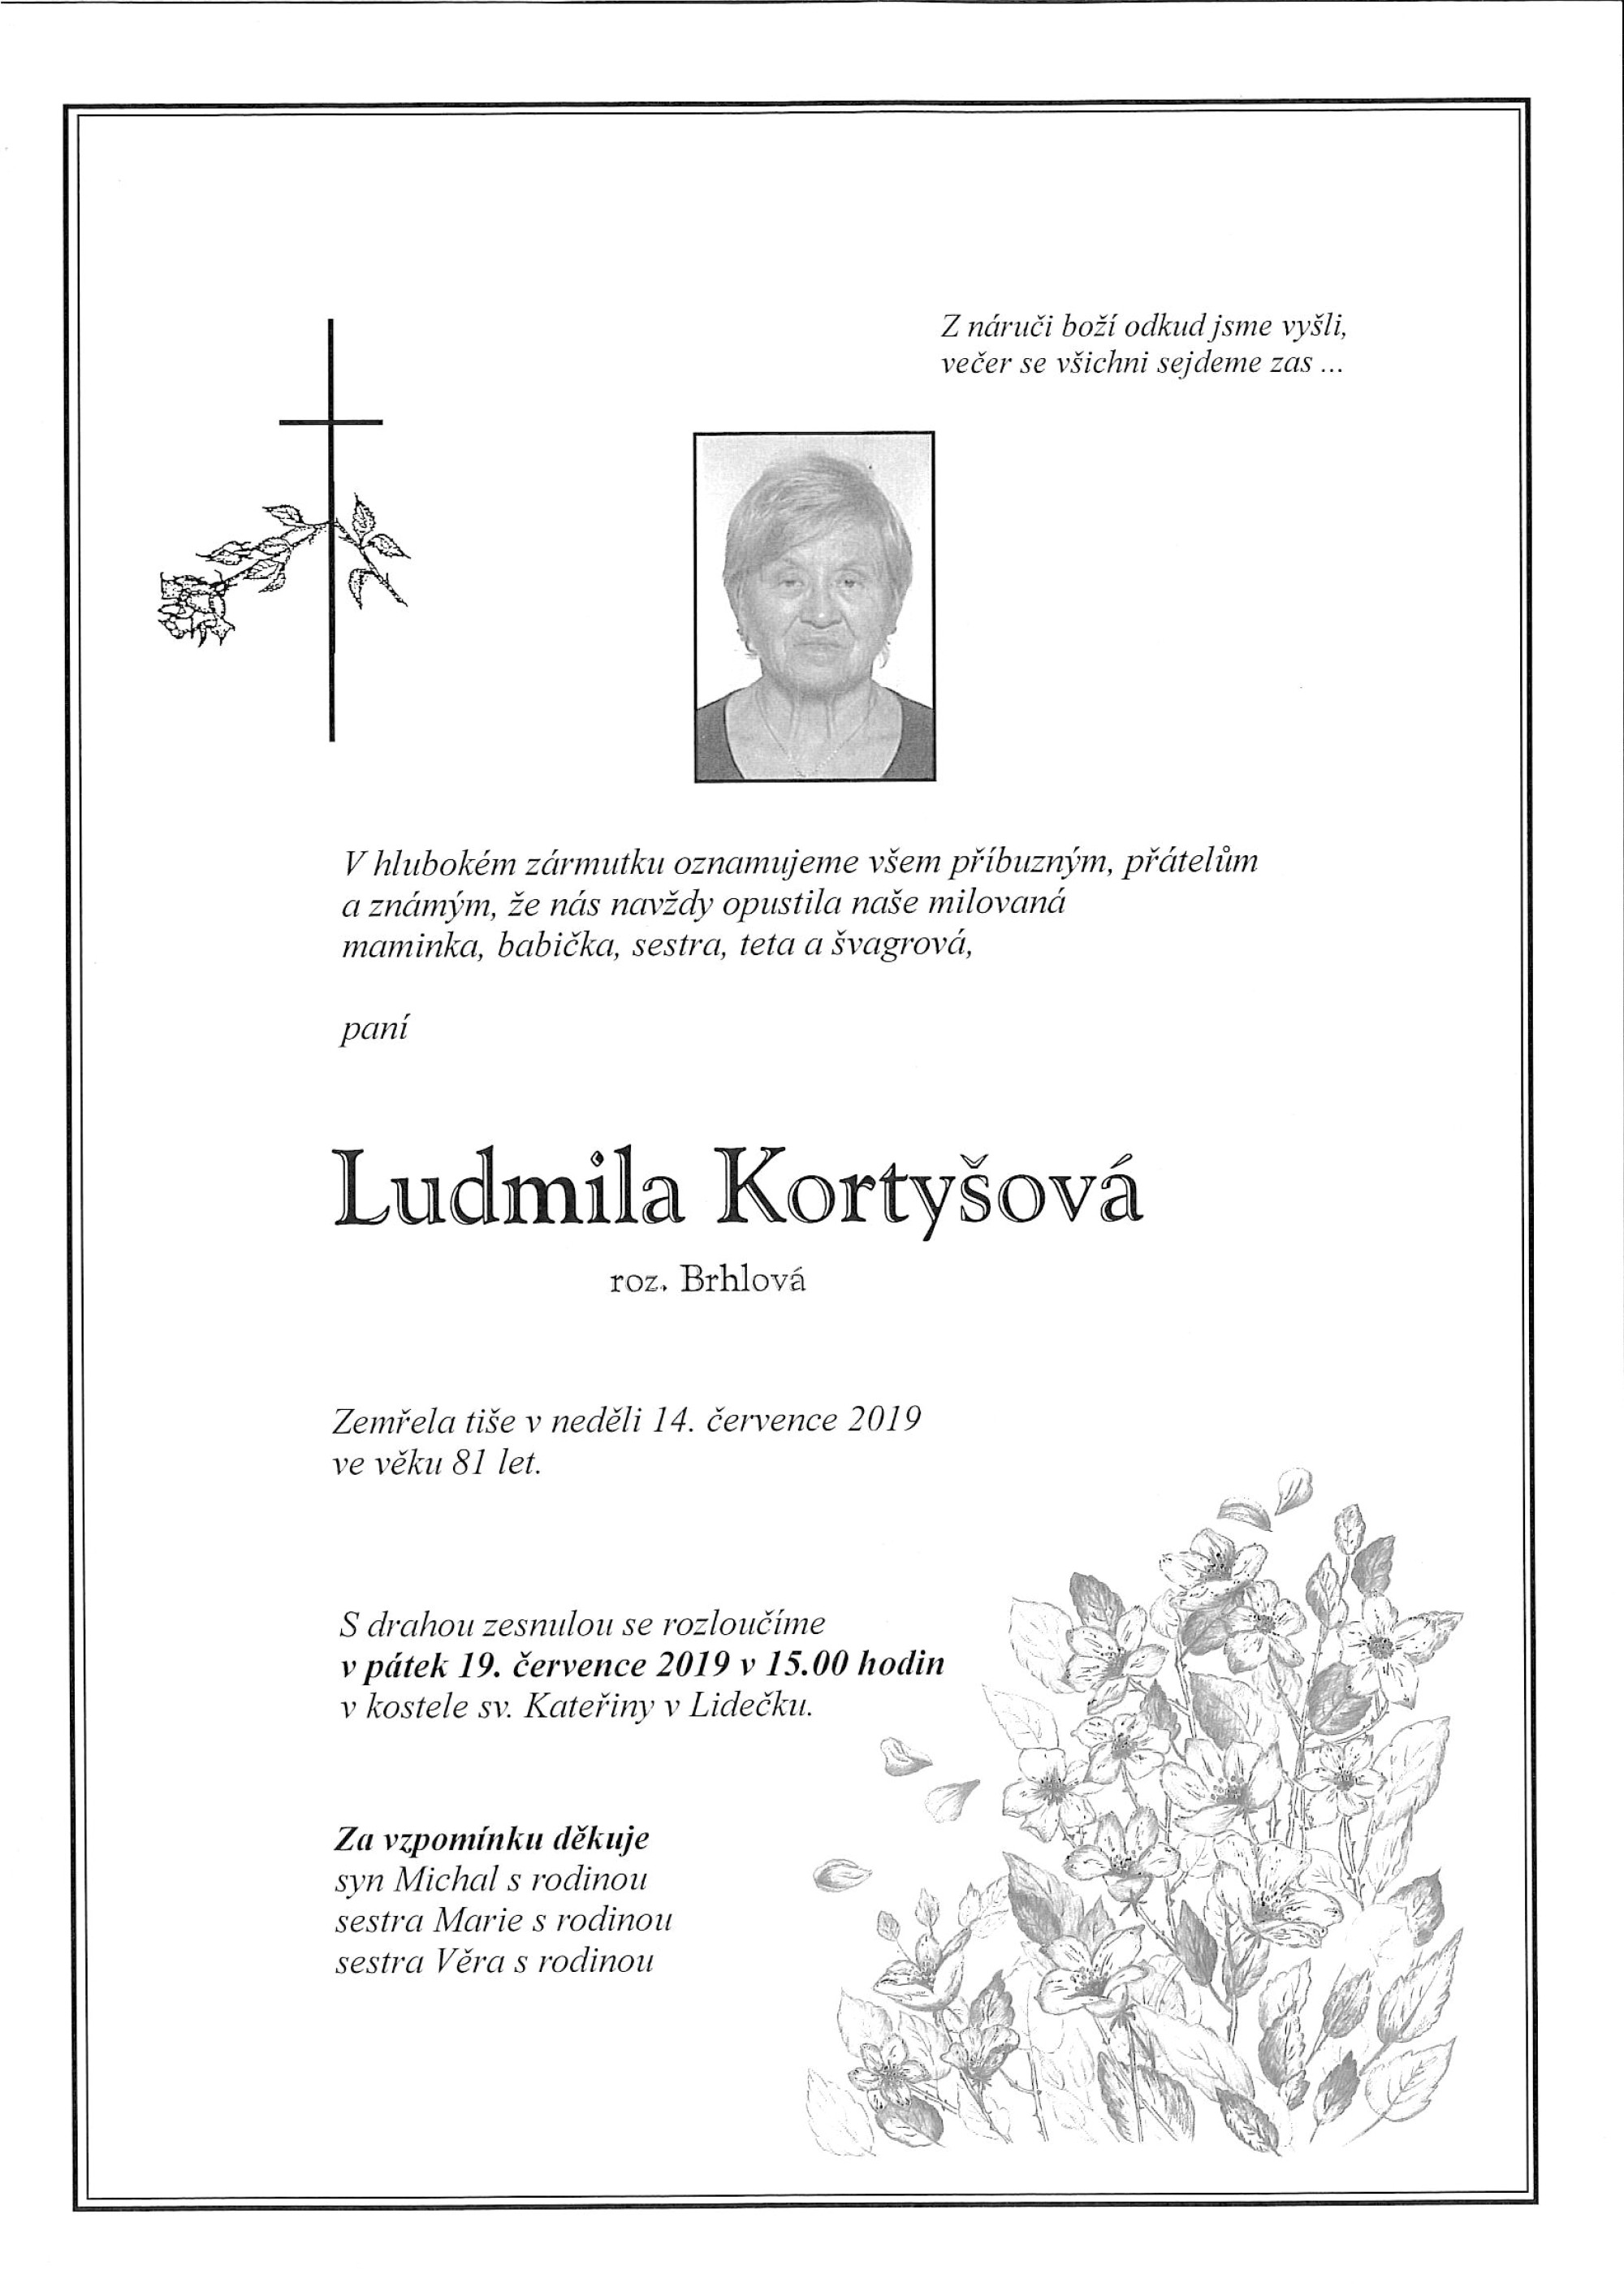 Ludmila Kortyšová